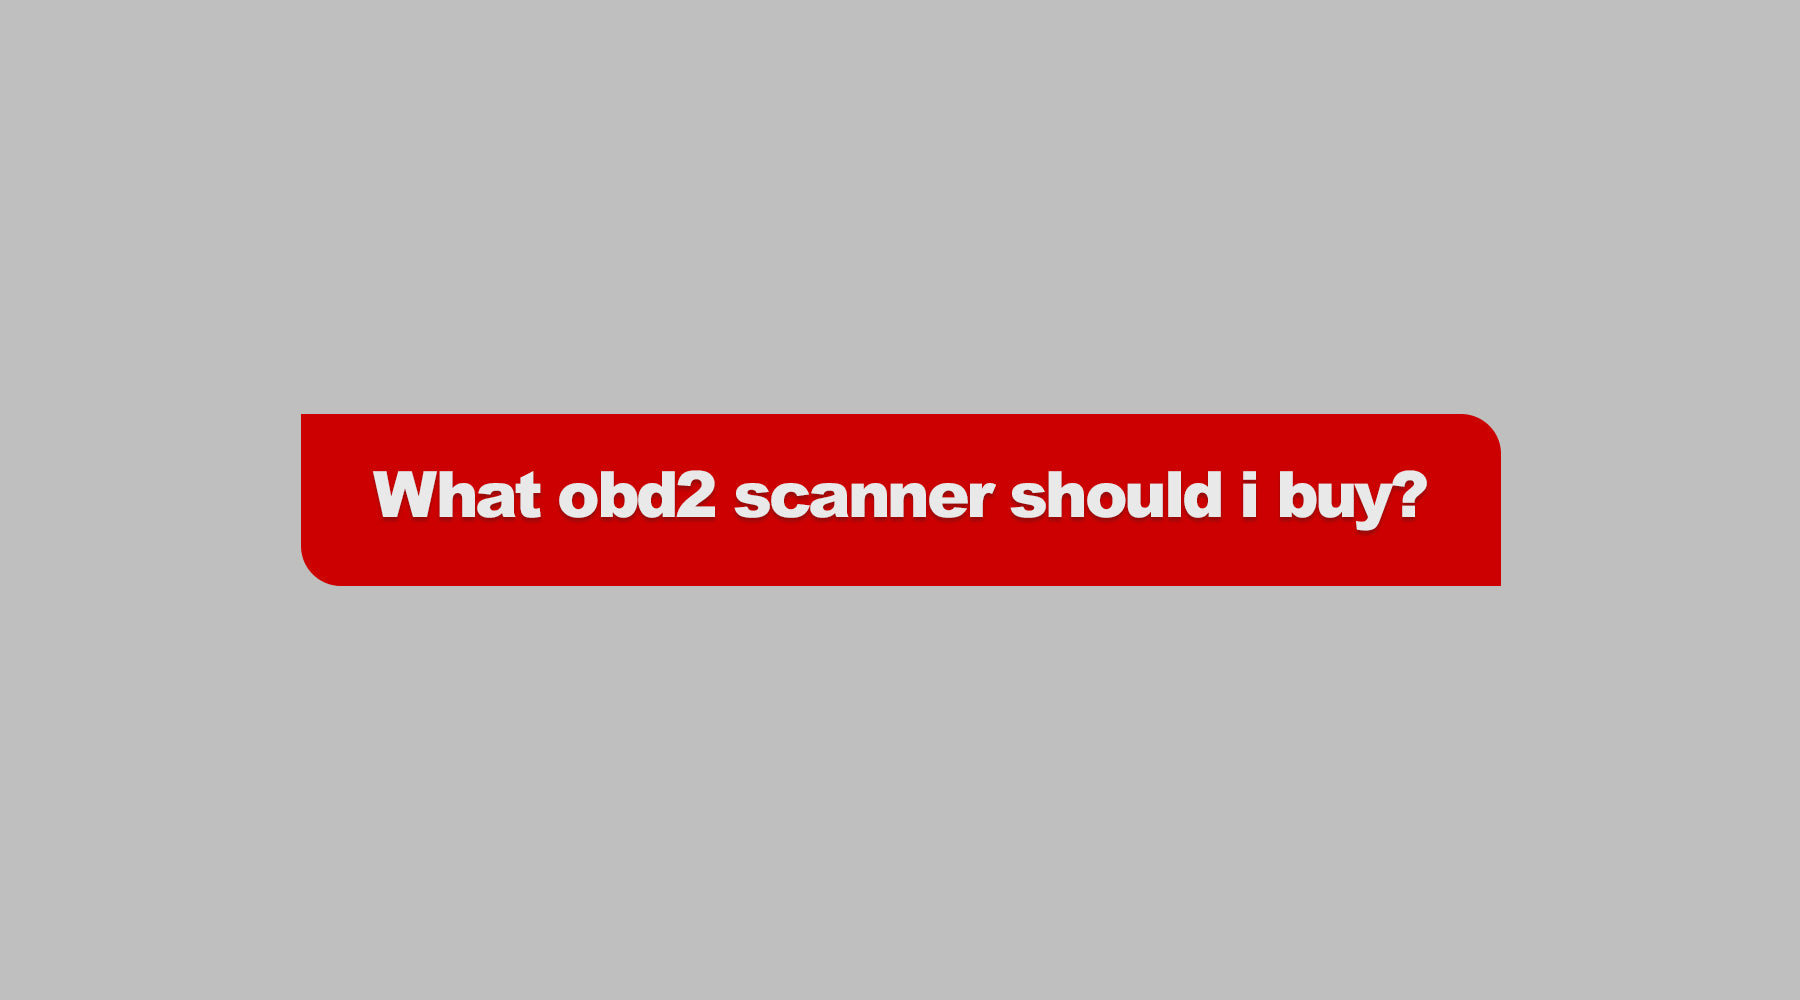 What obd2 scanner should i buy?